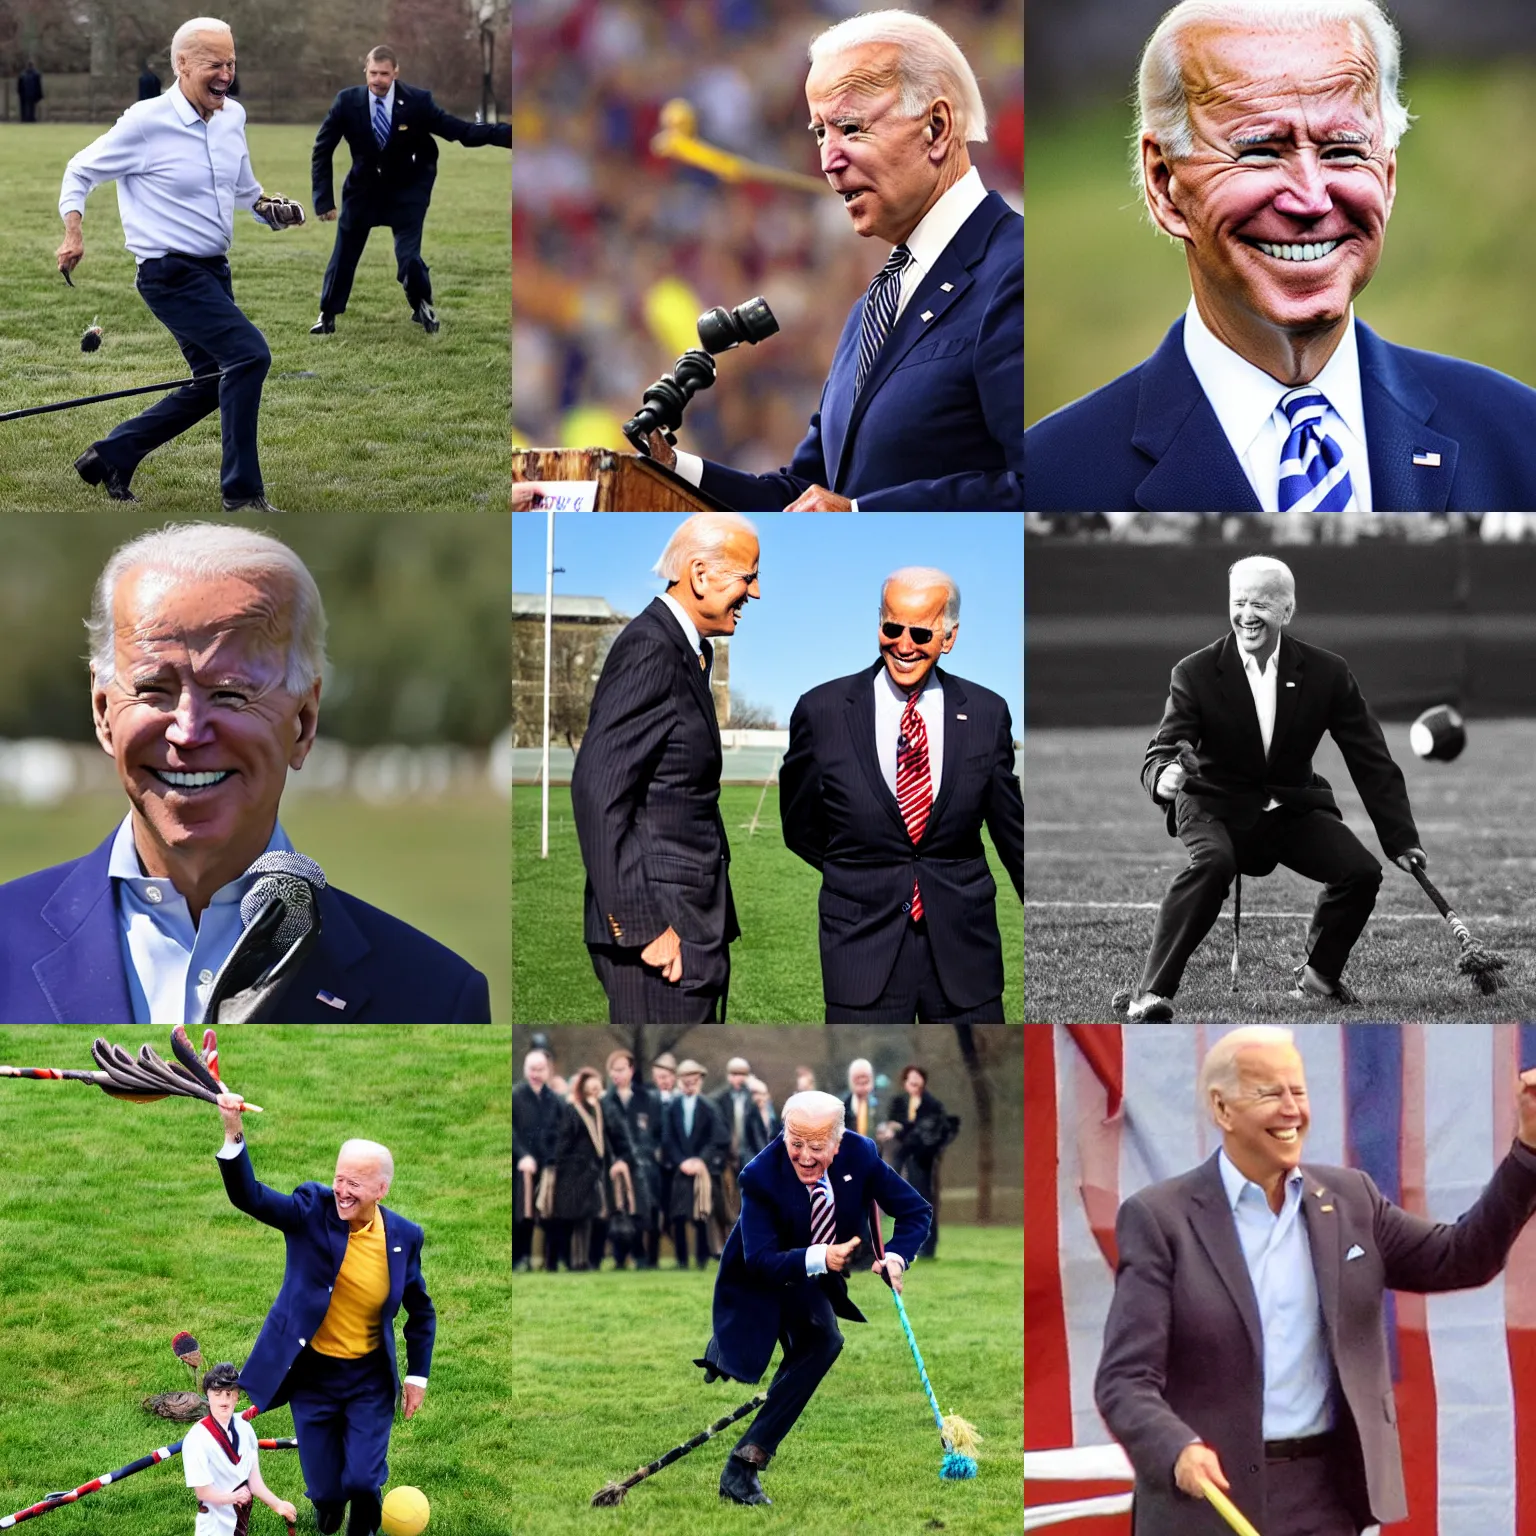 Prompt: Joe Biden playing Quidditch